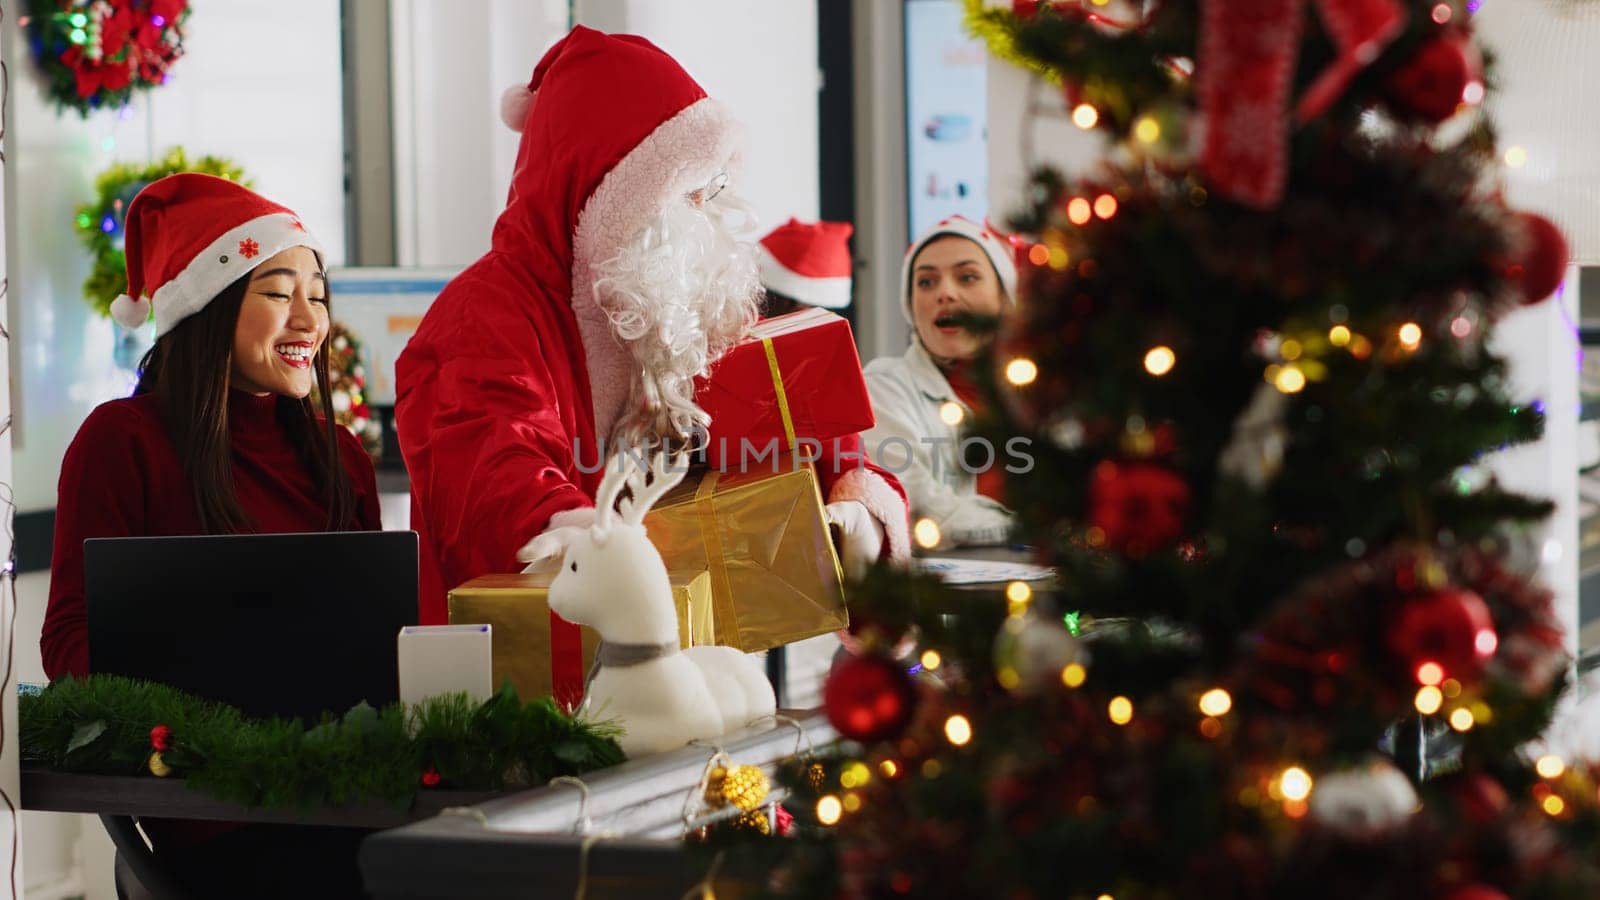 Employee dressed as Santa in office by DCStudio